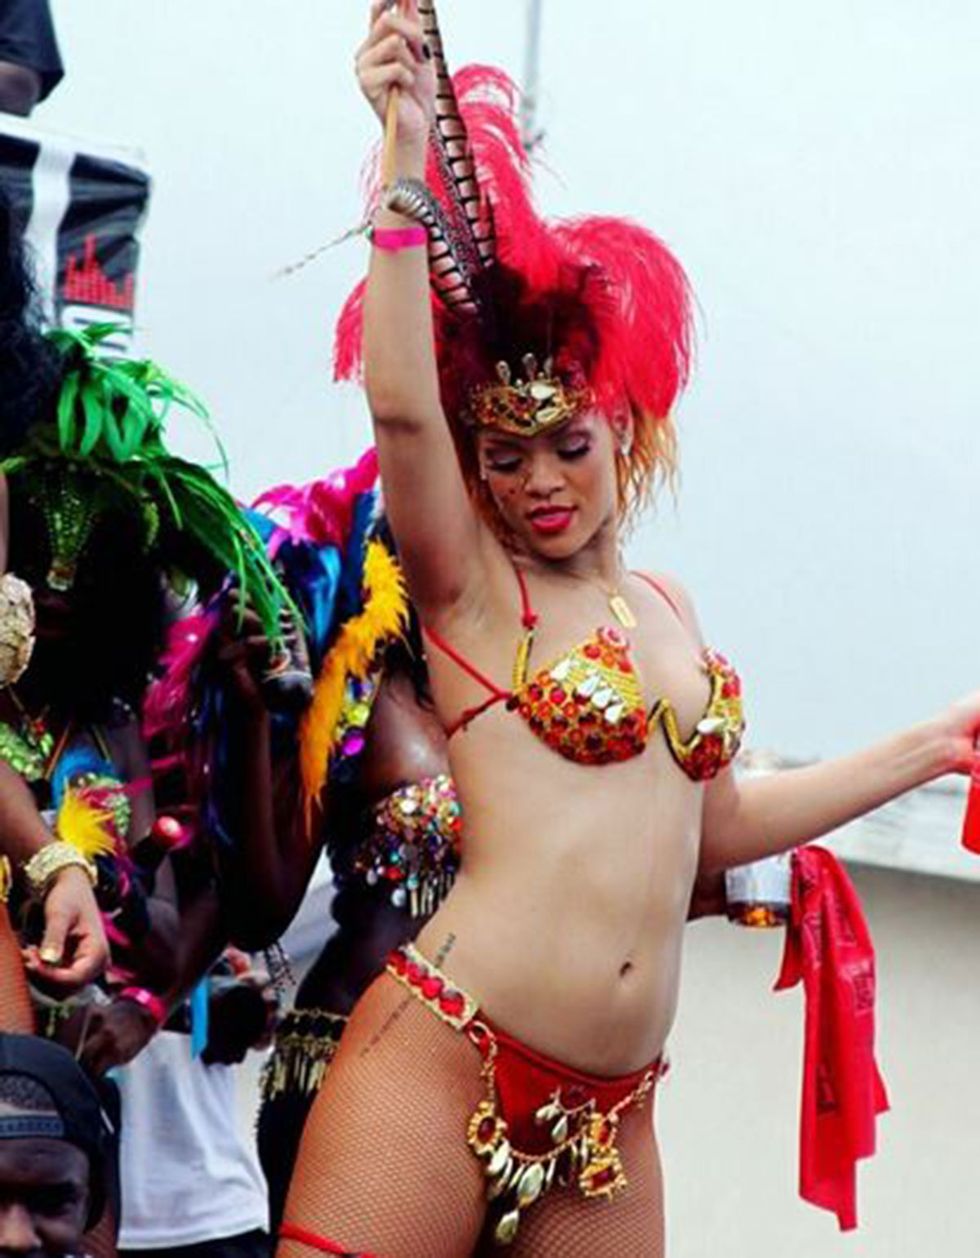 Carnival, Samba, Festival, Dance, Event, Public event, Dancer, Performing arts, Bikini, Abdomen, 